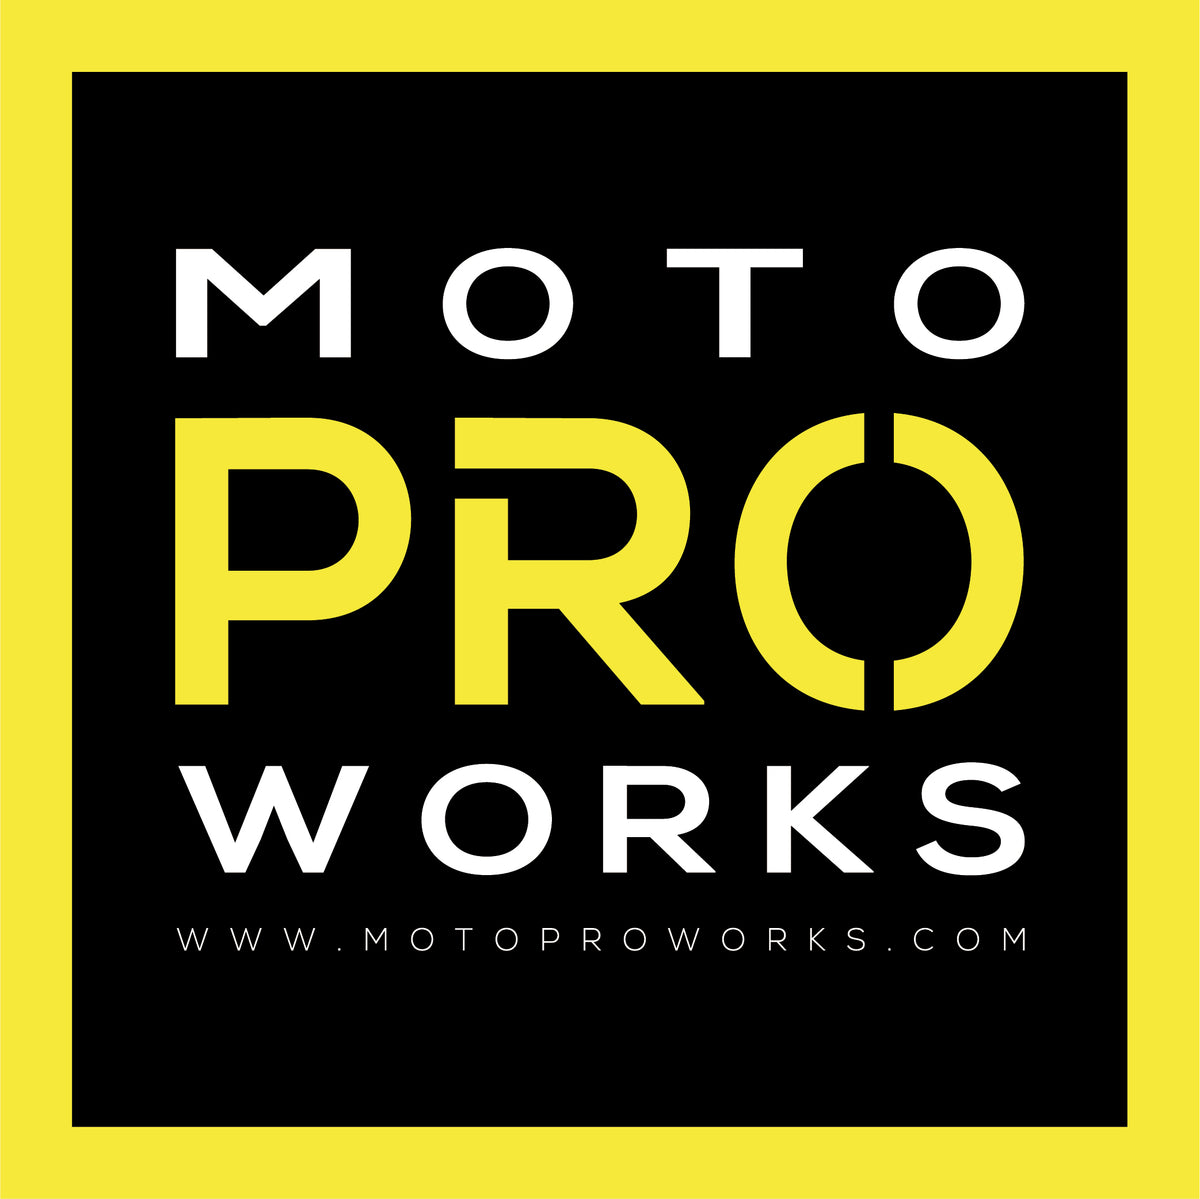 www.motoproworks.com